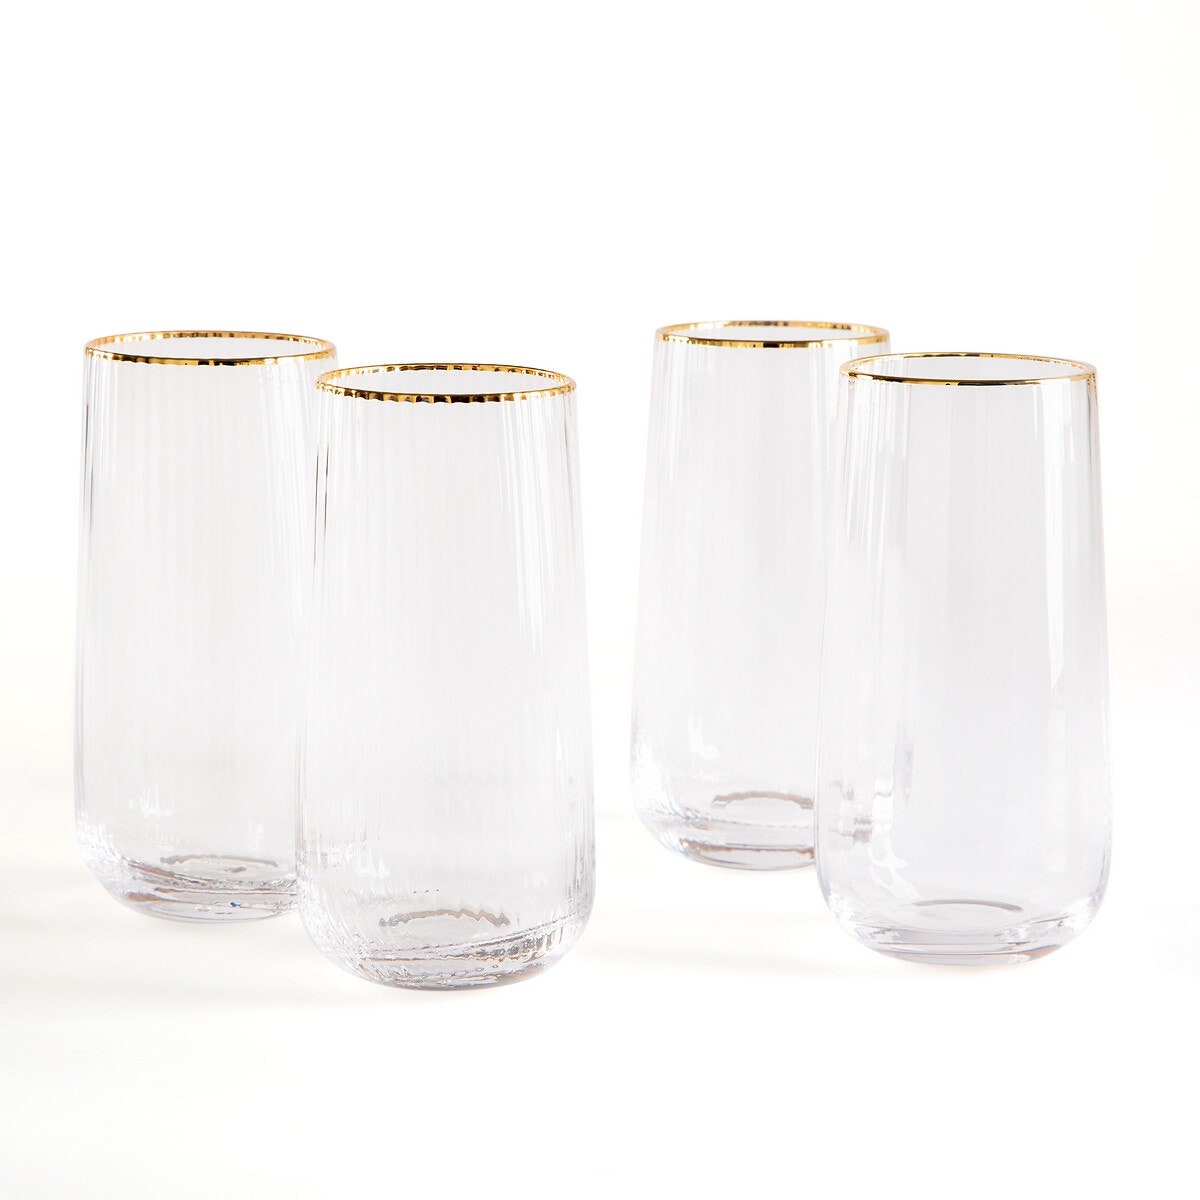 Набор из четырех граненых стаканов для воды Lurik La Redoute 2136 руб.